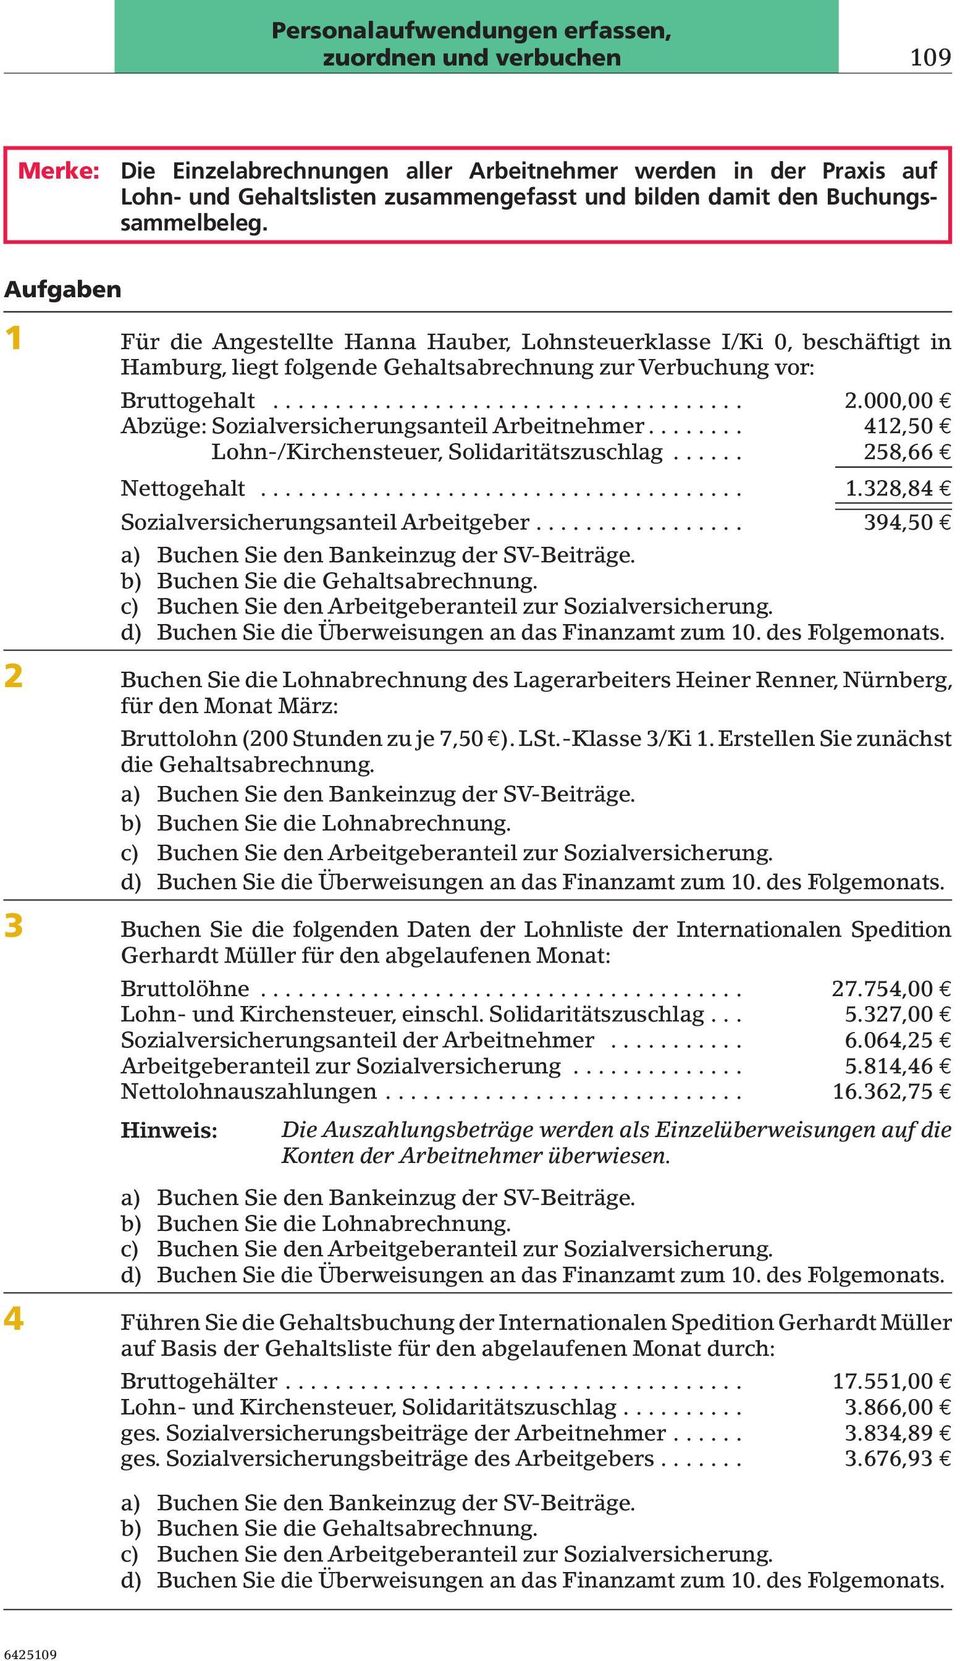 Aufgaben 1 Für die Angestellte Hanna Hauber, Lohnsteuerklasse I/Ki 0, beschäftigt in Hamburg,liegt folgende Gehaltsabrechnung zur erbuchung vor: Bruttogehalt... 2.